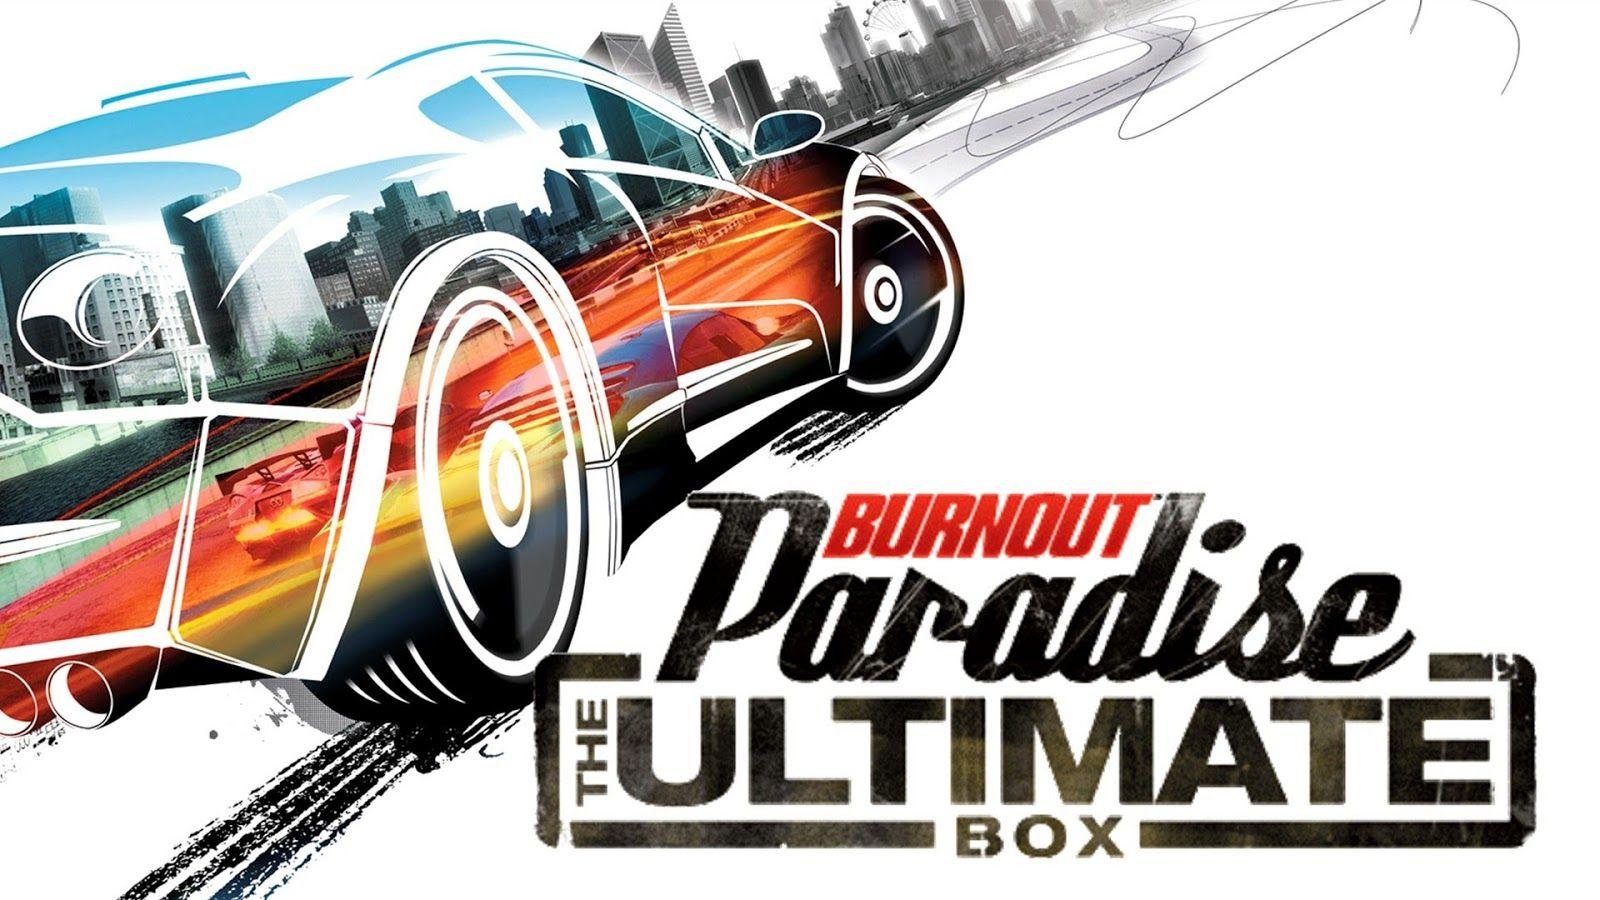 Burnout Paradise PC Game Free Download Full Version. Burnout